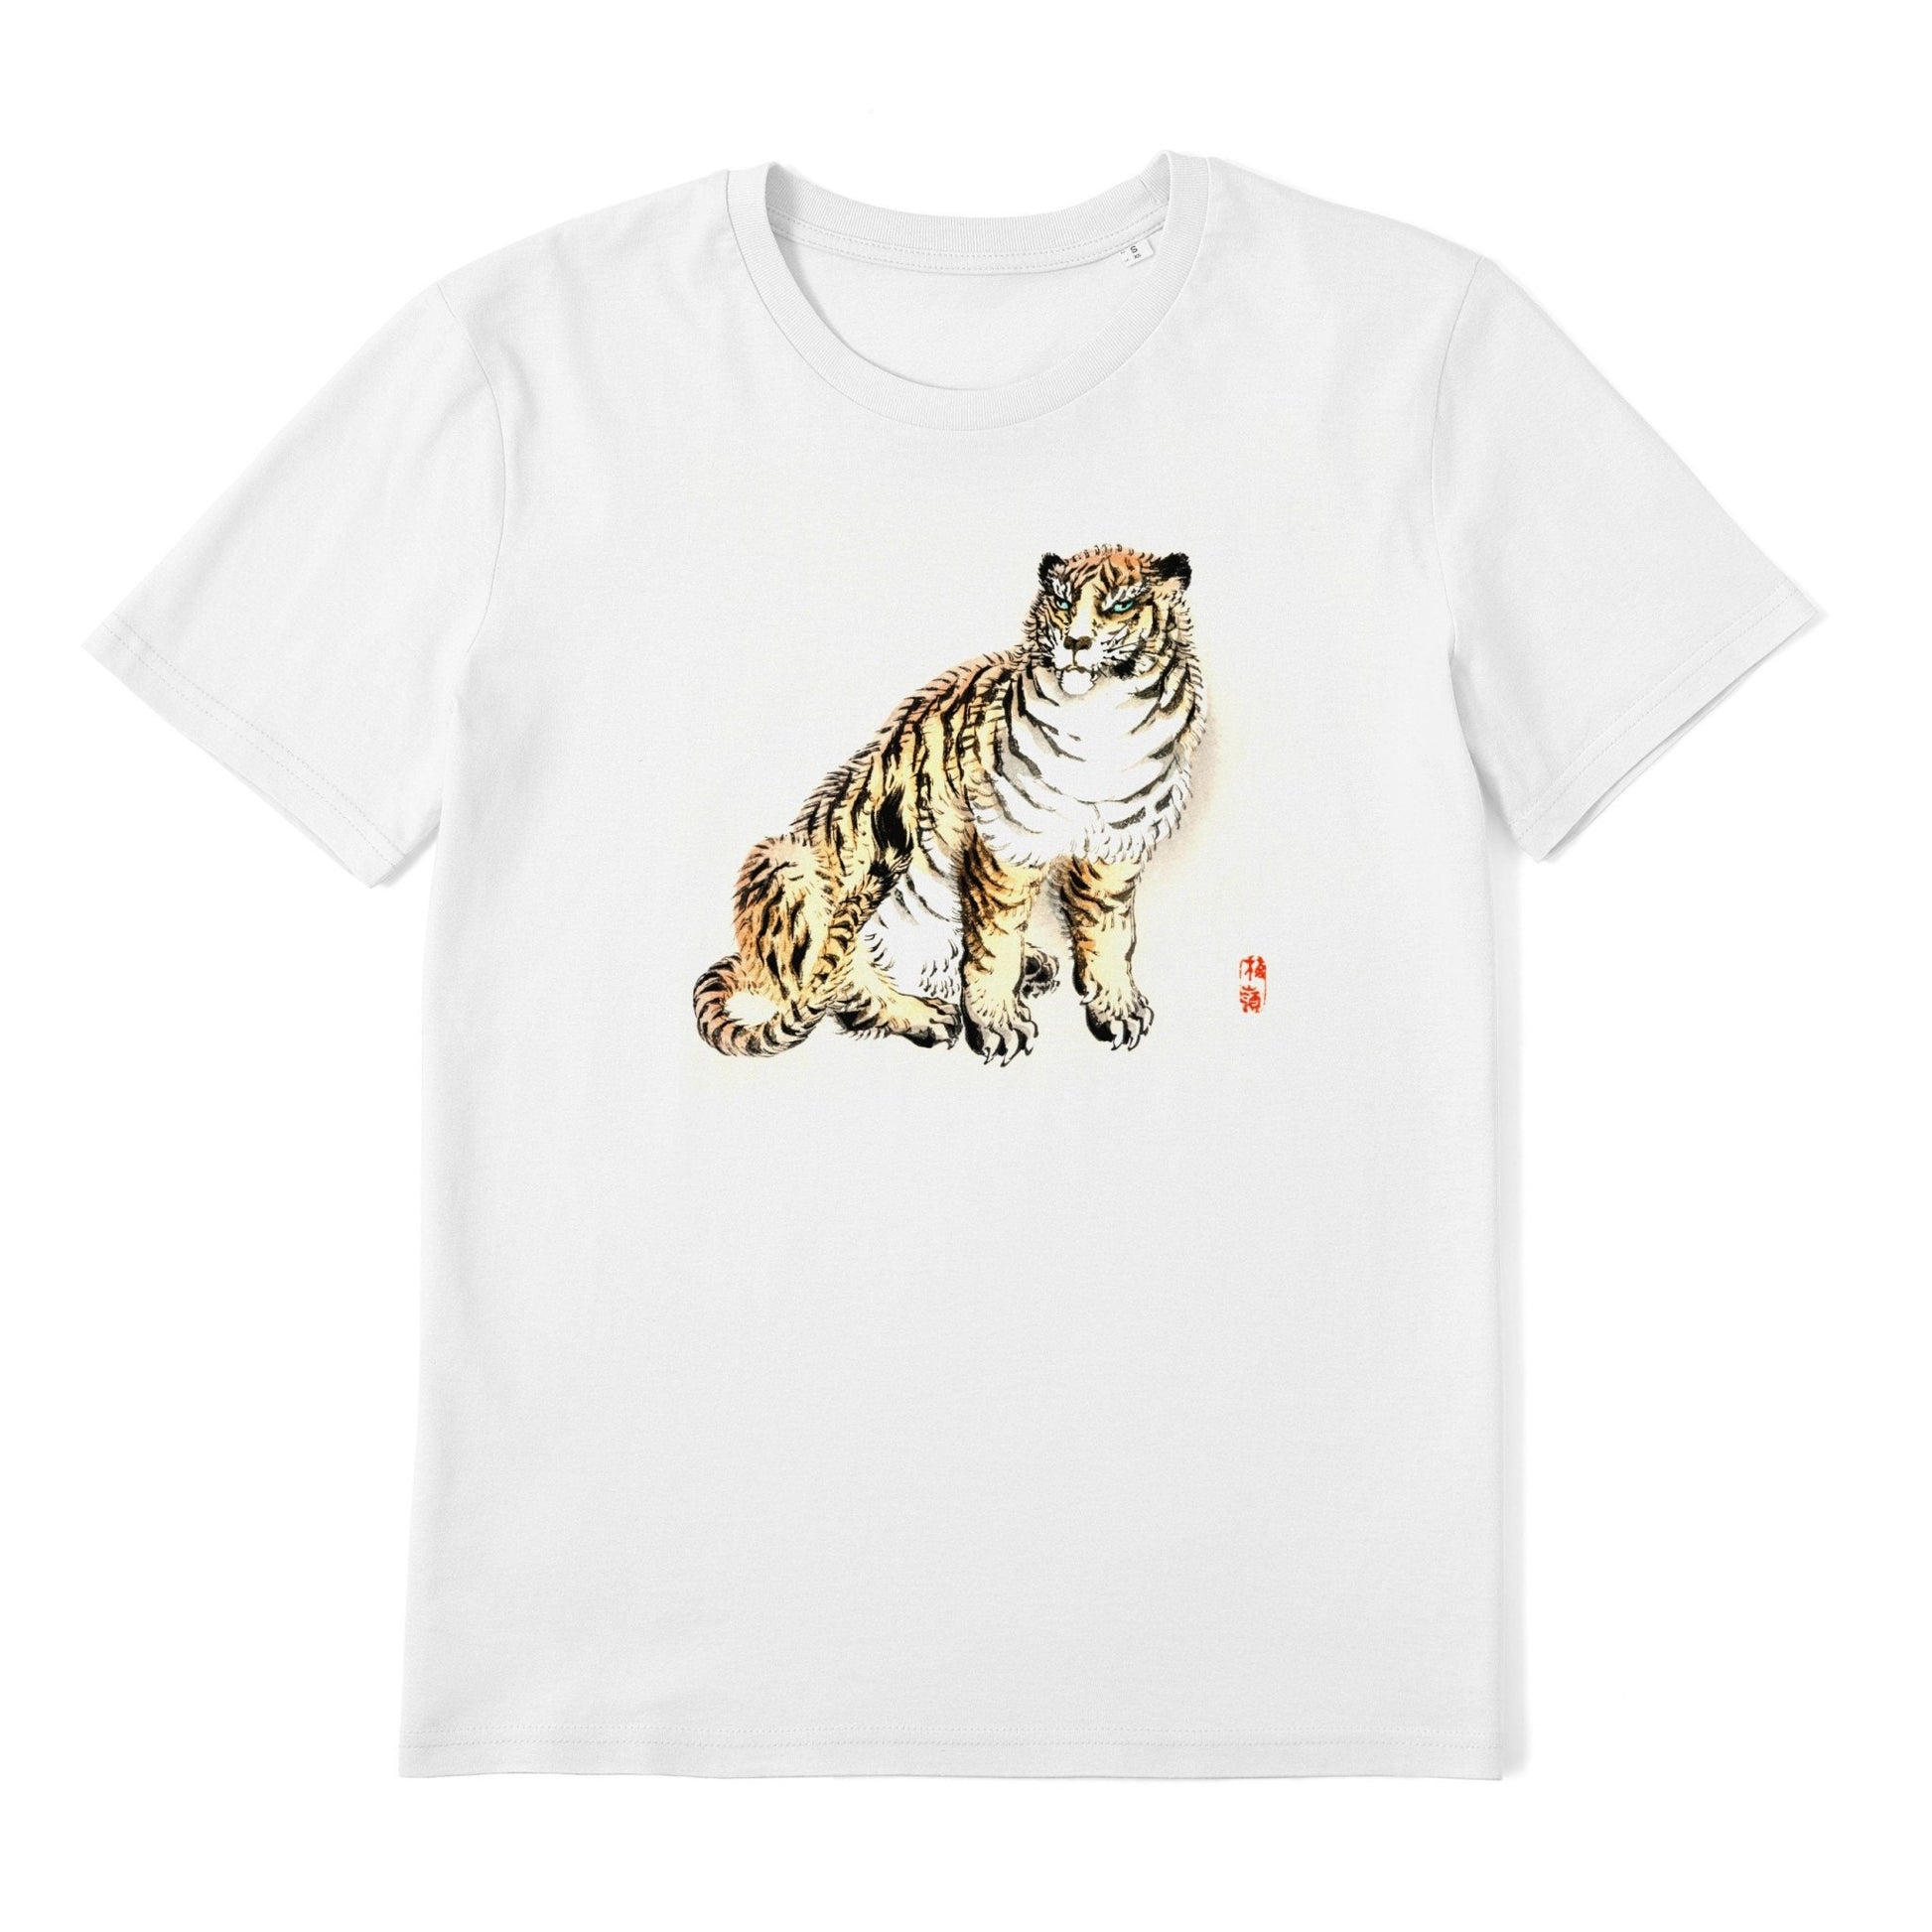 KONO BAIREI - Tiger T-Shirt - Pathos Studio - Shirts & Tops